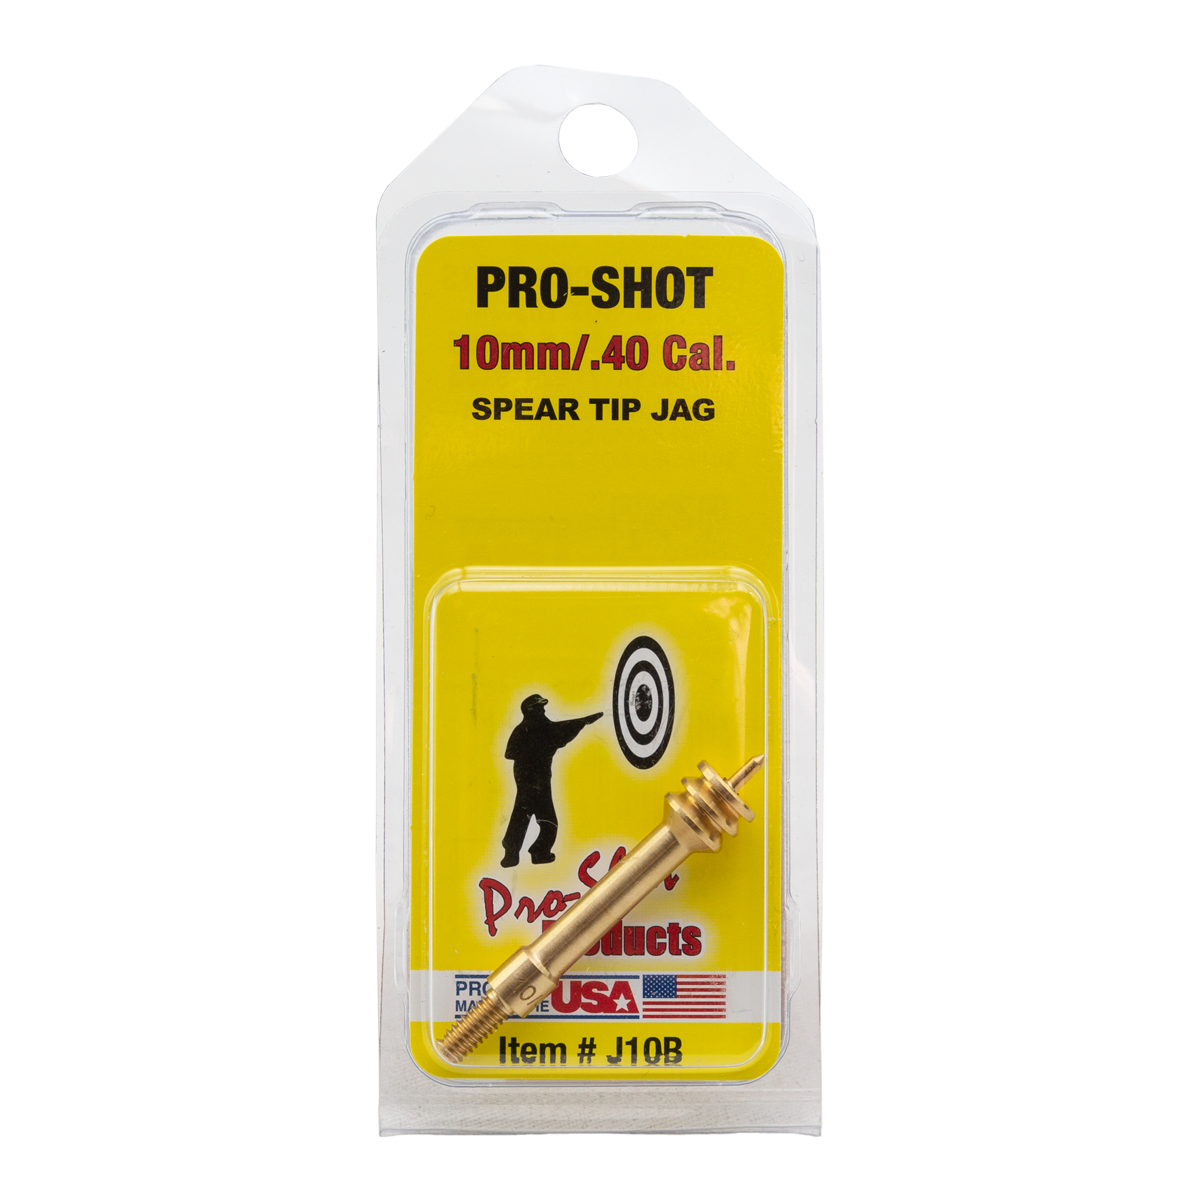 Pro-Shot Spear Tip 10mm/.40 Cal. Jag